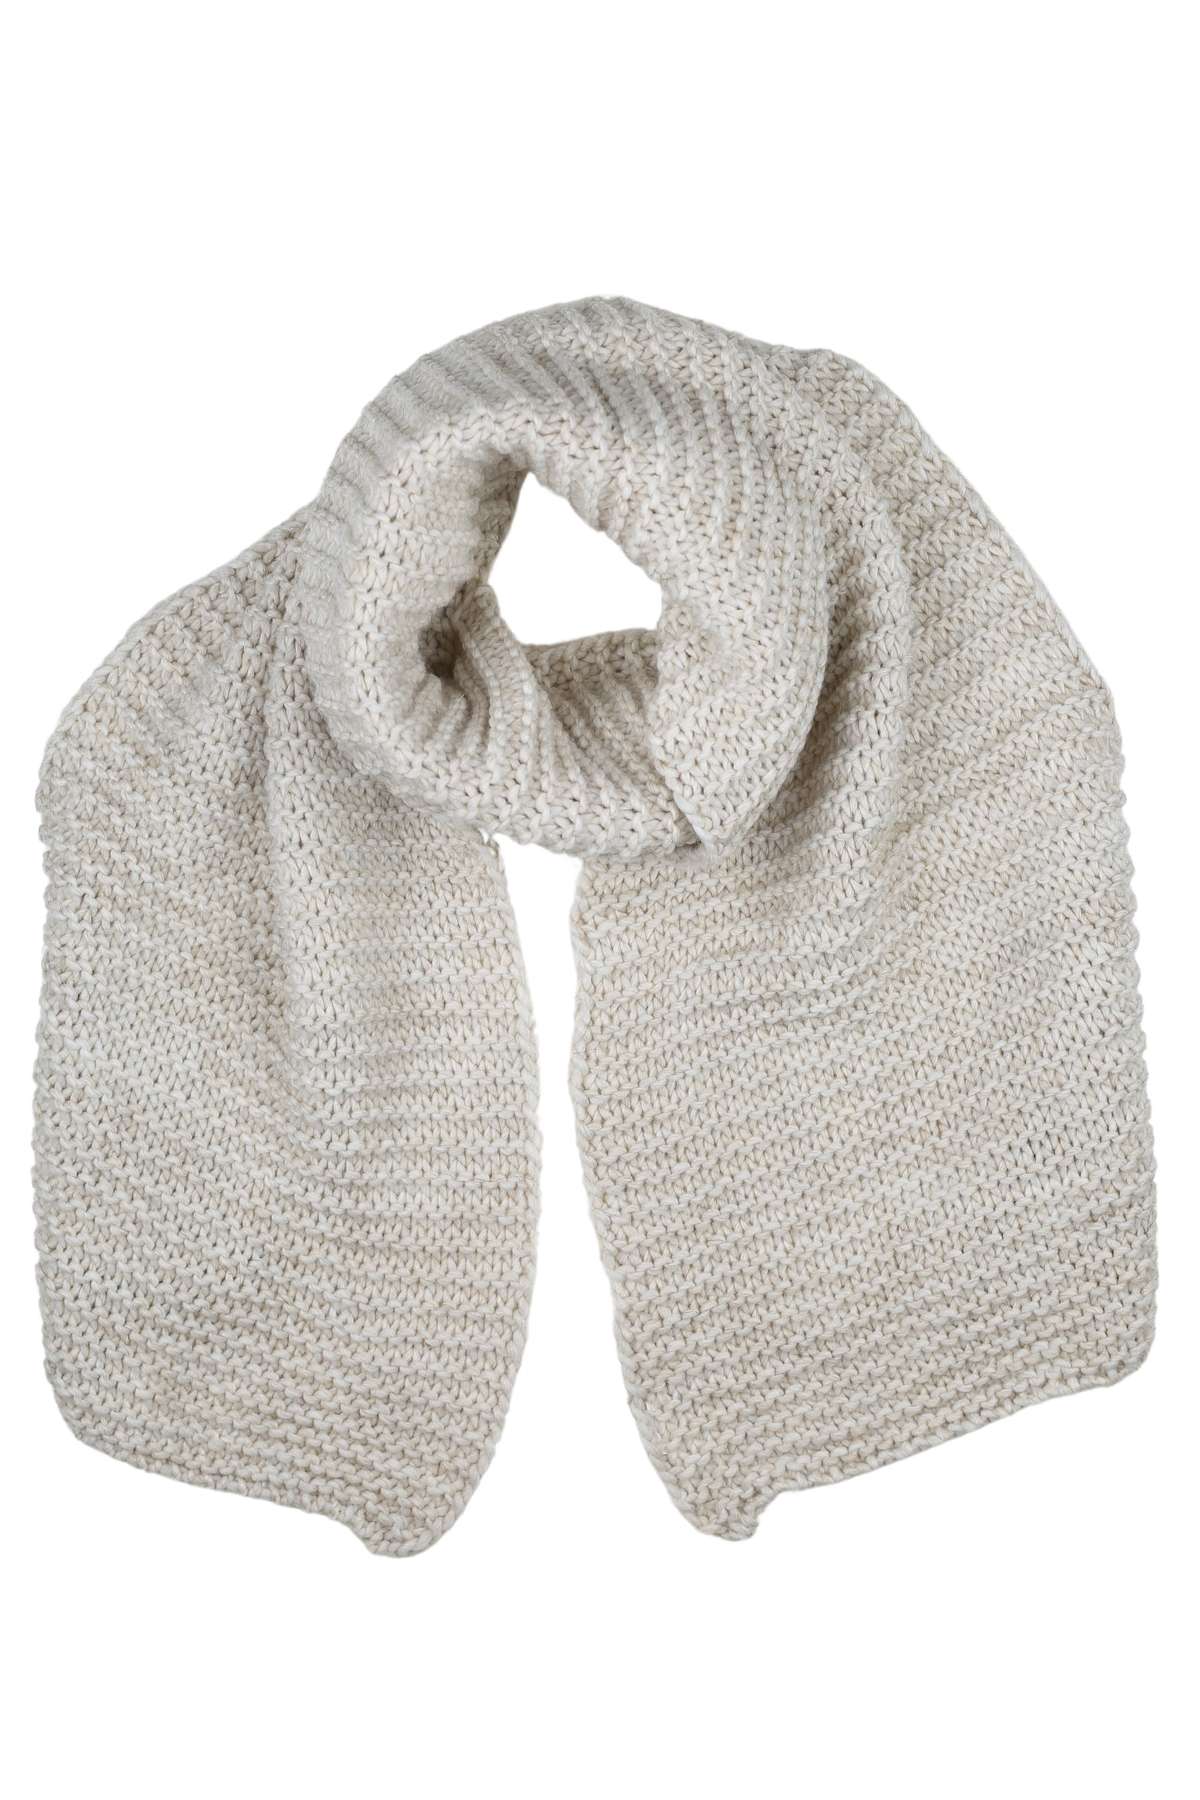 Шарф шерстяной, (1 шт.), шарф вязаный, производство Италия.